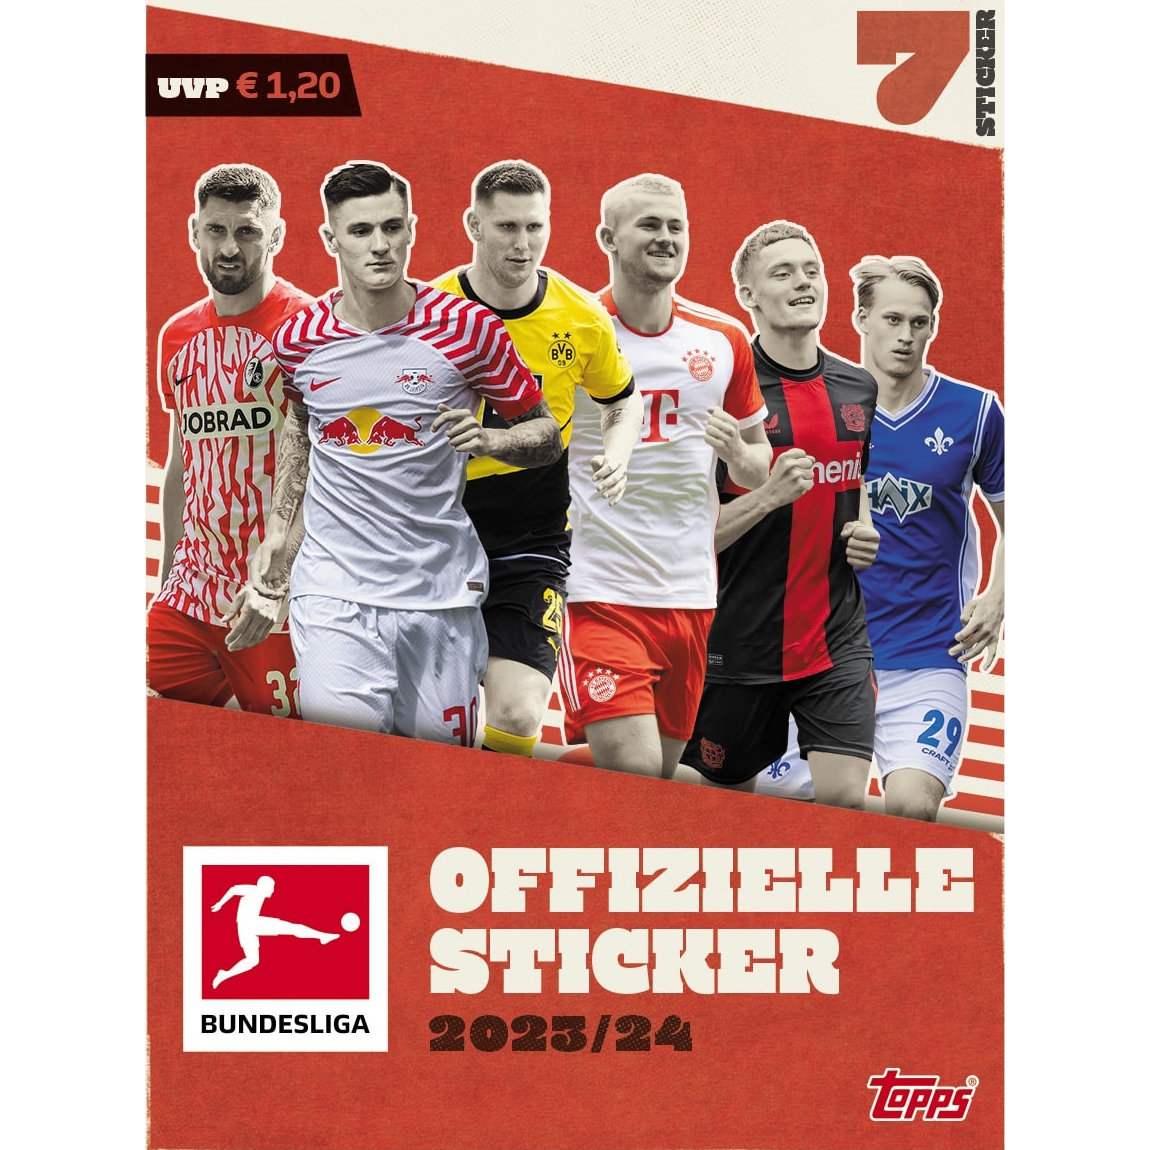 Die offiziellen Bundesliga Sticker 2023/24 von Topps sind endlich erhältlich!